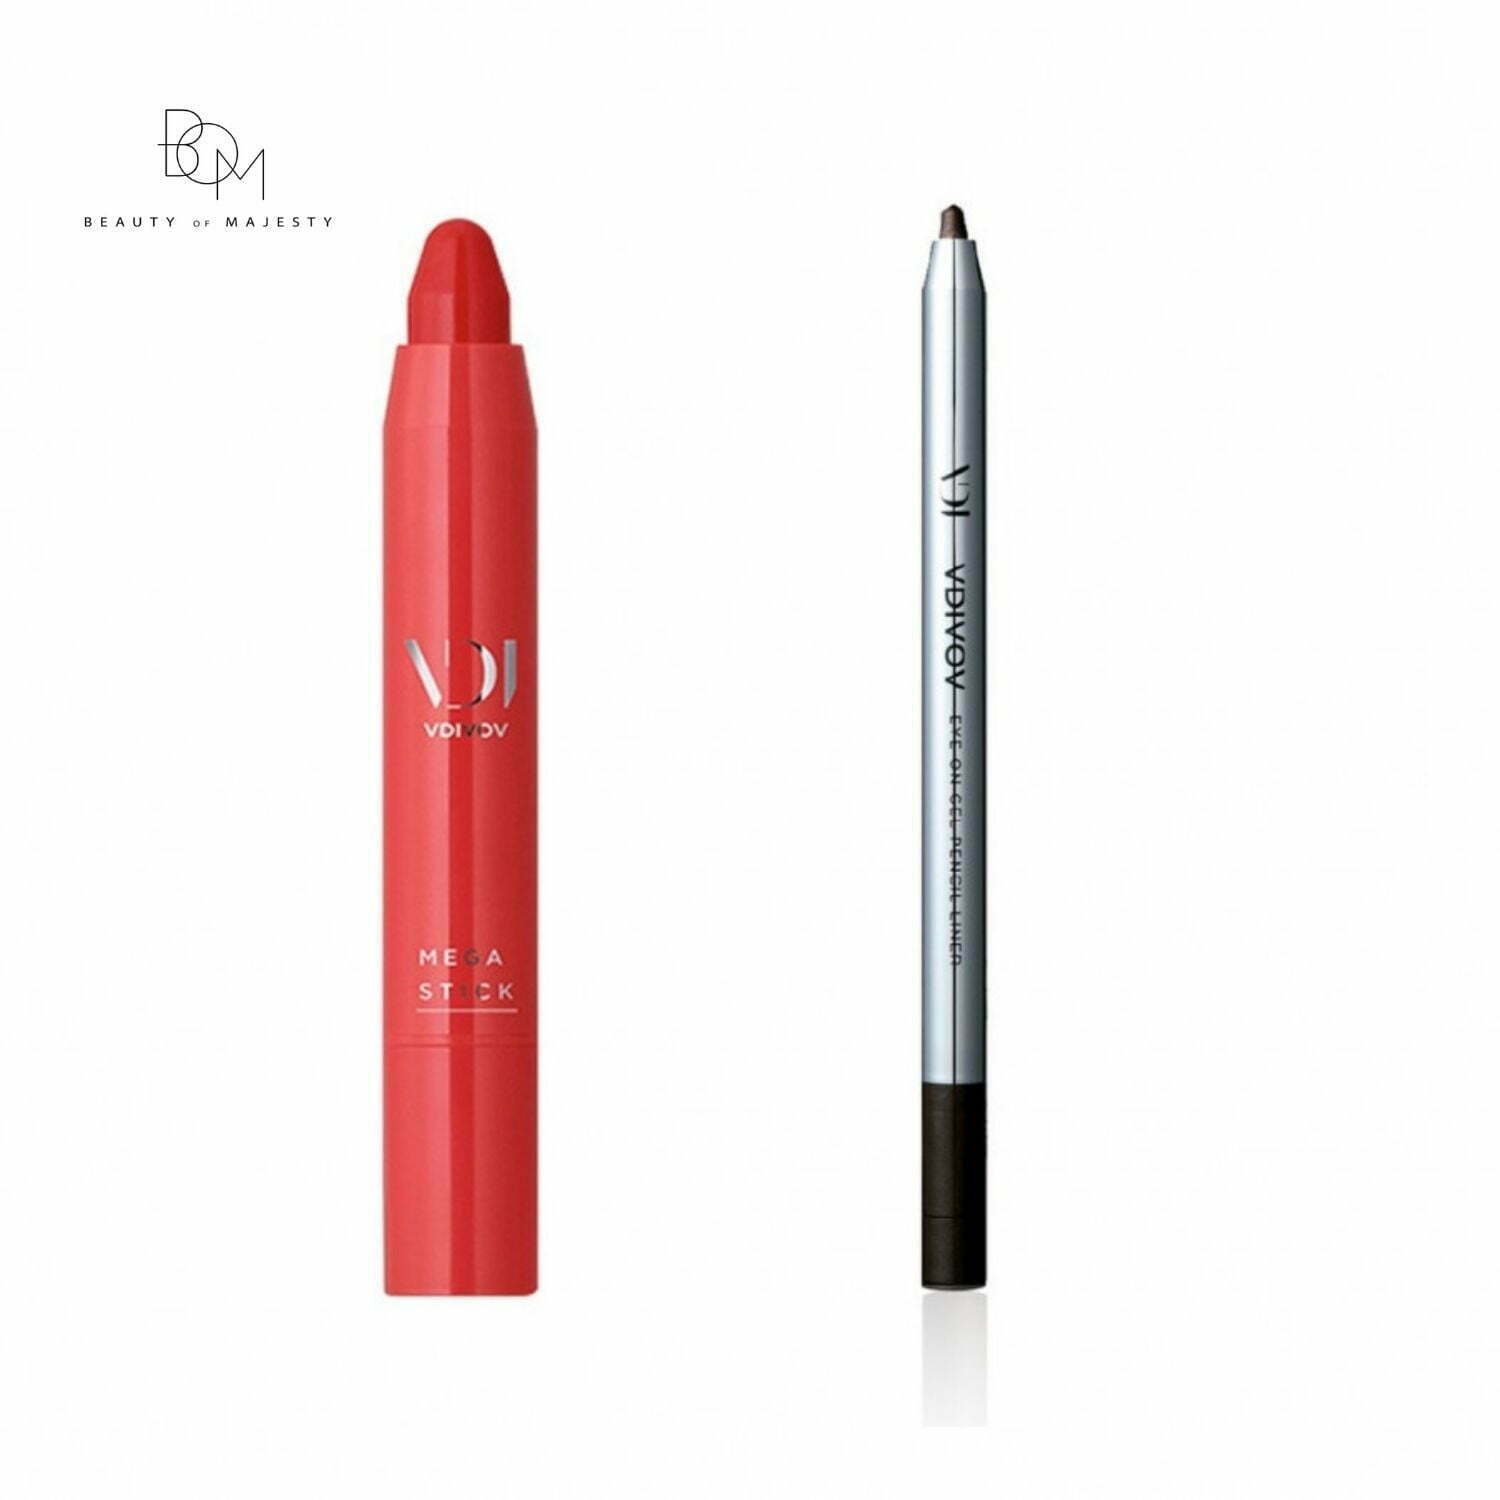 VDIVOV Mega Stick Pencil Lipstick được thiết kế với đầu nhọn, giúp tạo hiệu ứng lòng môi và dễ dàng đánh toàn bộ môi. Chất son lâu mềm mịn, dễ tán và gần như không xuất hiện một nhược điểm bết dính nào.